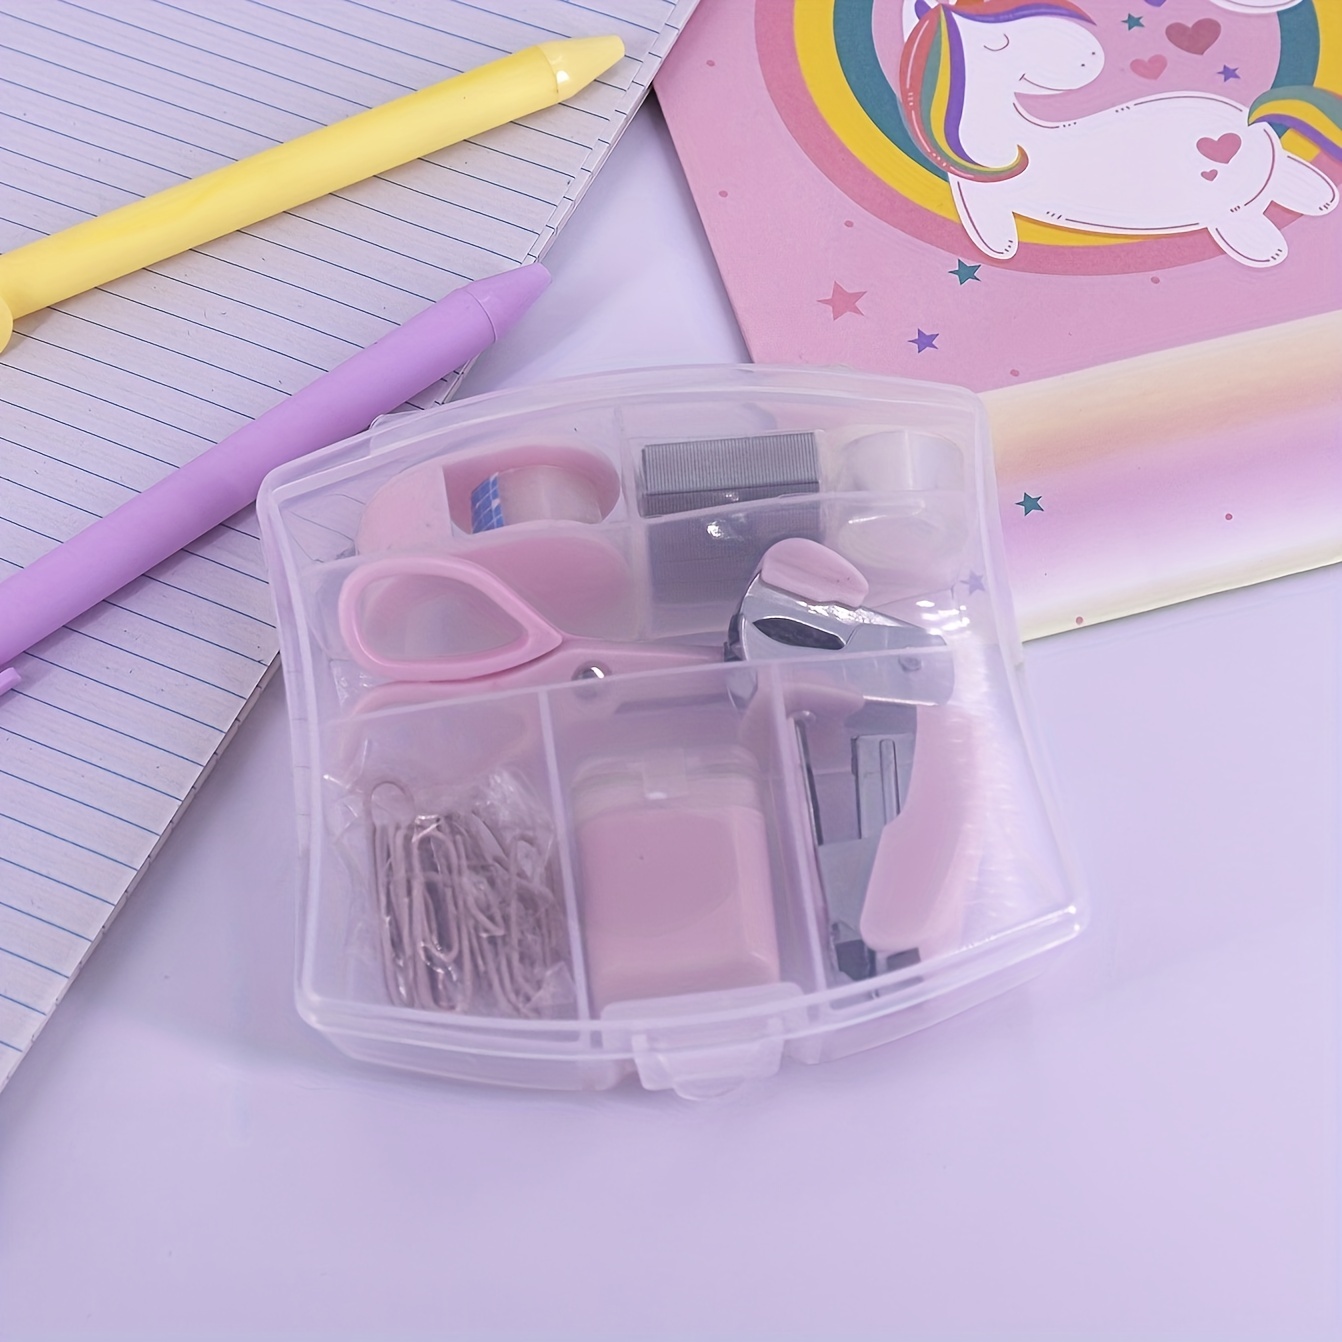 LD Pink Mini Office Supply Kit Portable Case with Scissors, Paper Clips, Tape Dispenser, Pencilener, Stapler & Staple Remover